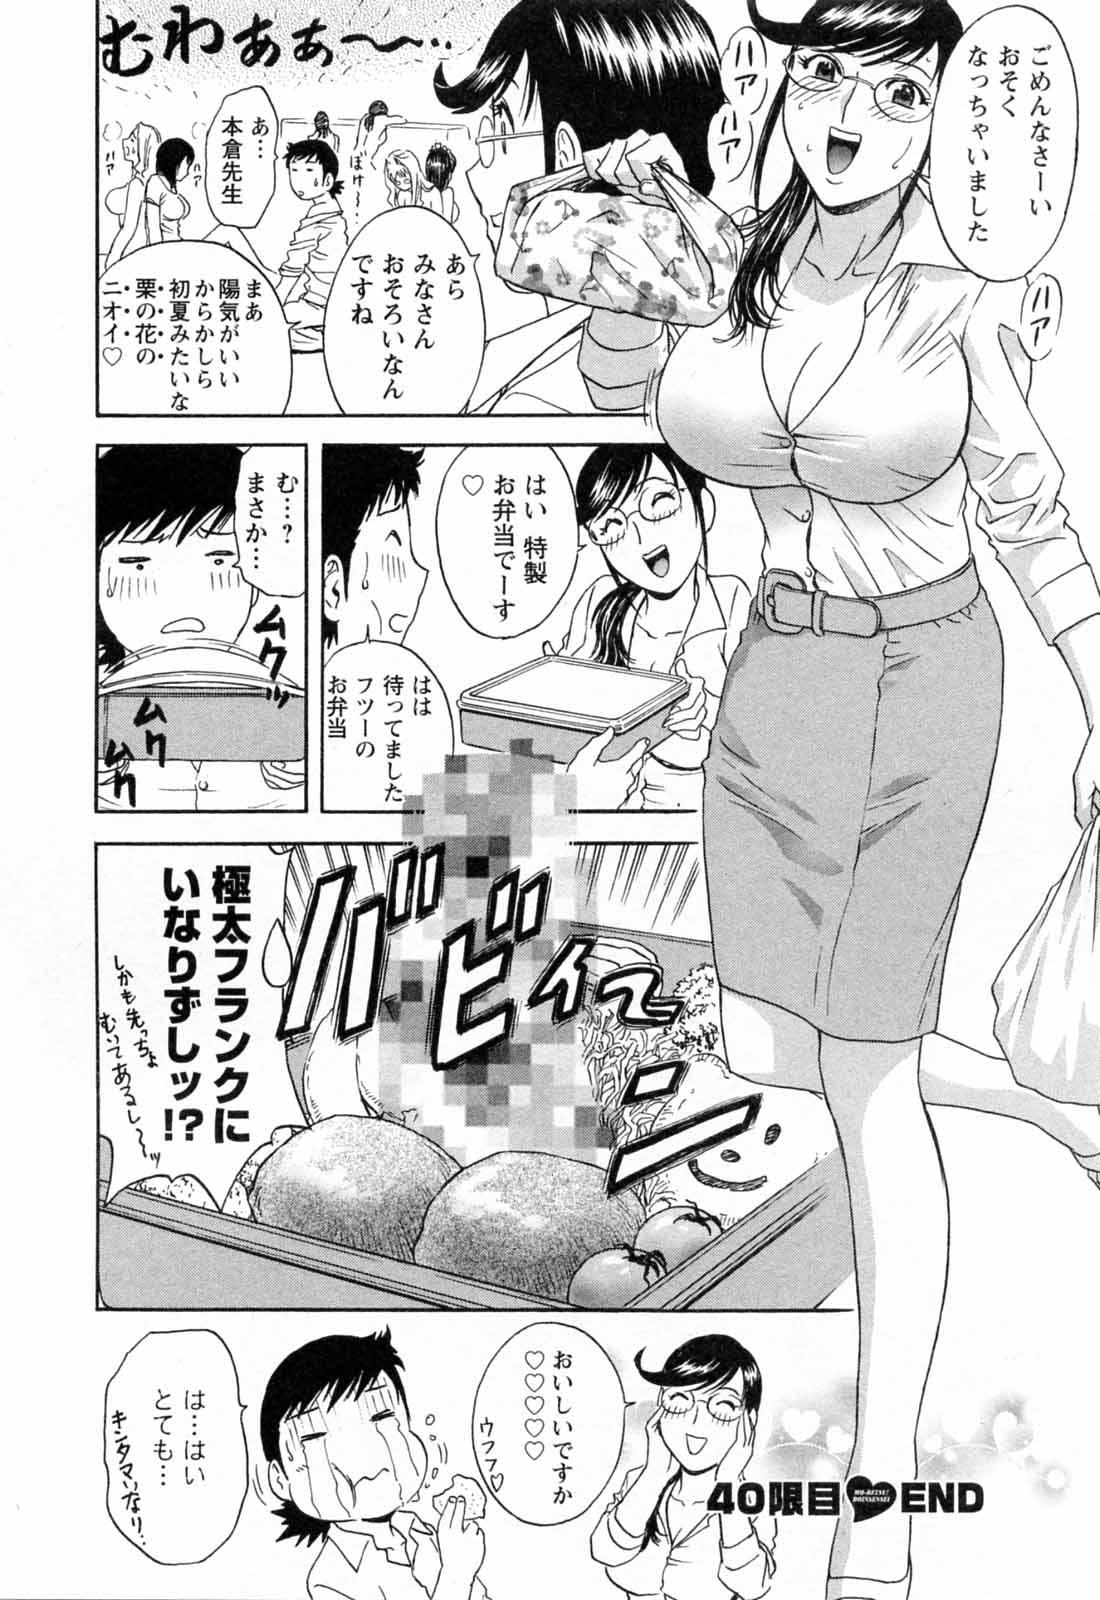 [Hidemaru] Mo-Retsu! Boin Sensei (Boing Boing Teacher) Vol.5 93